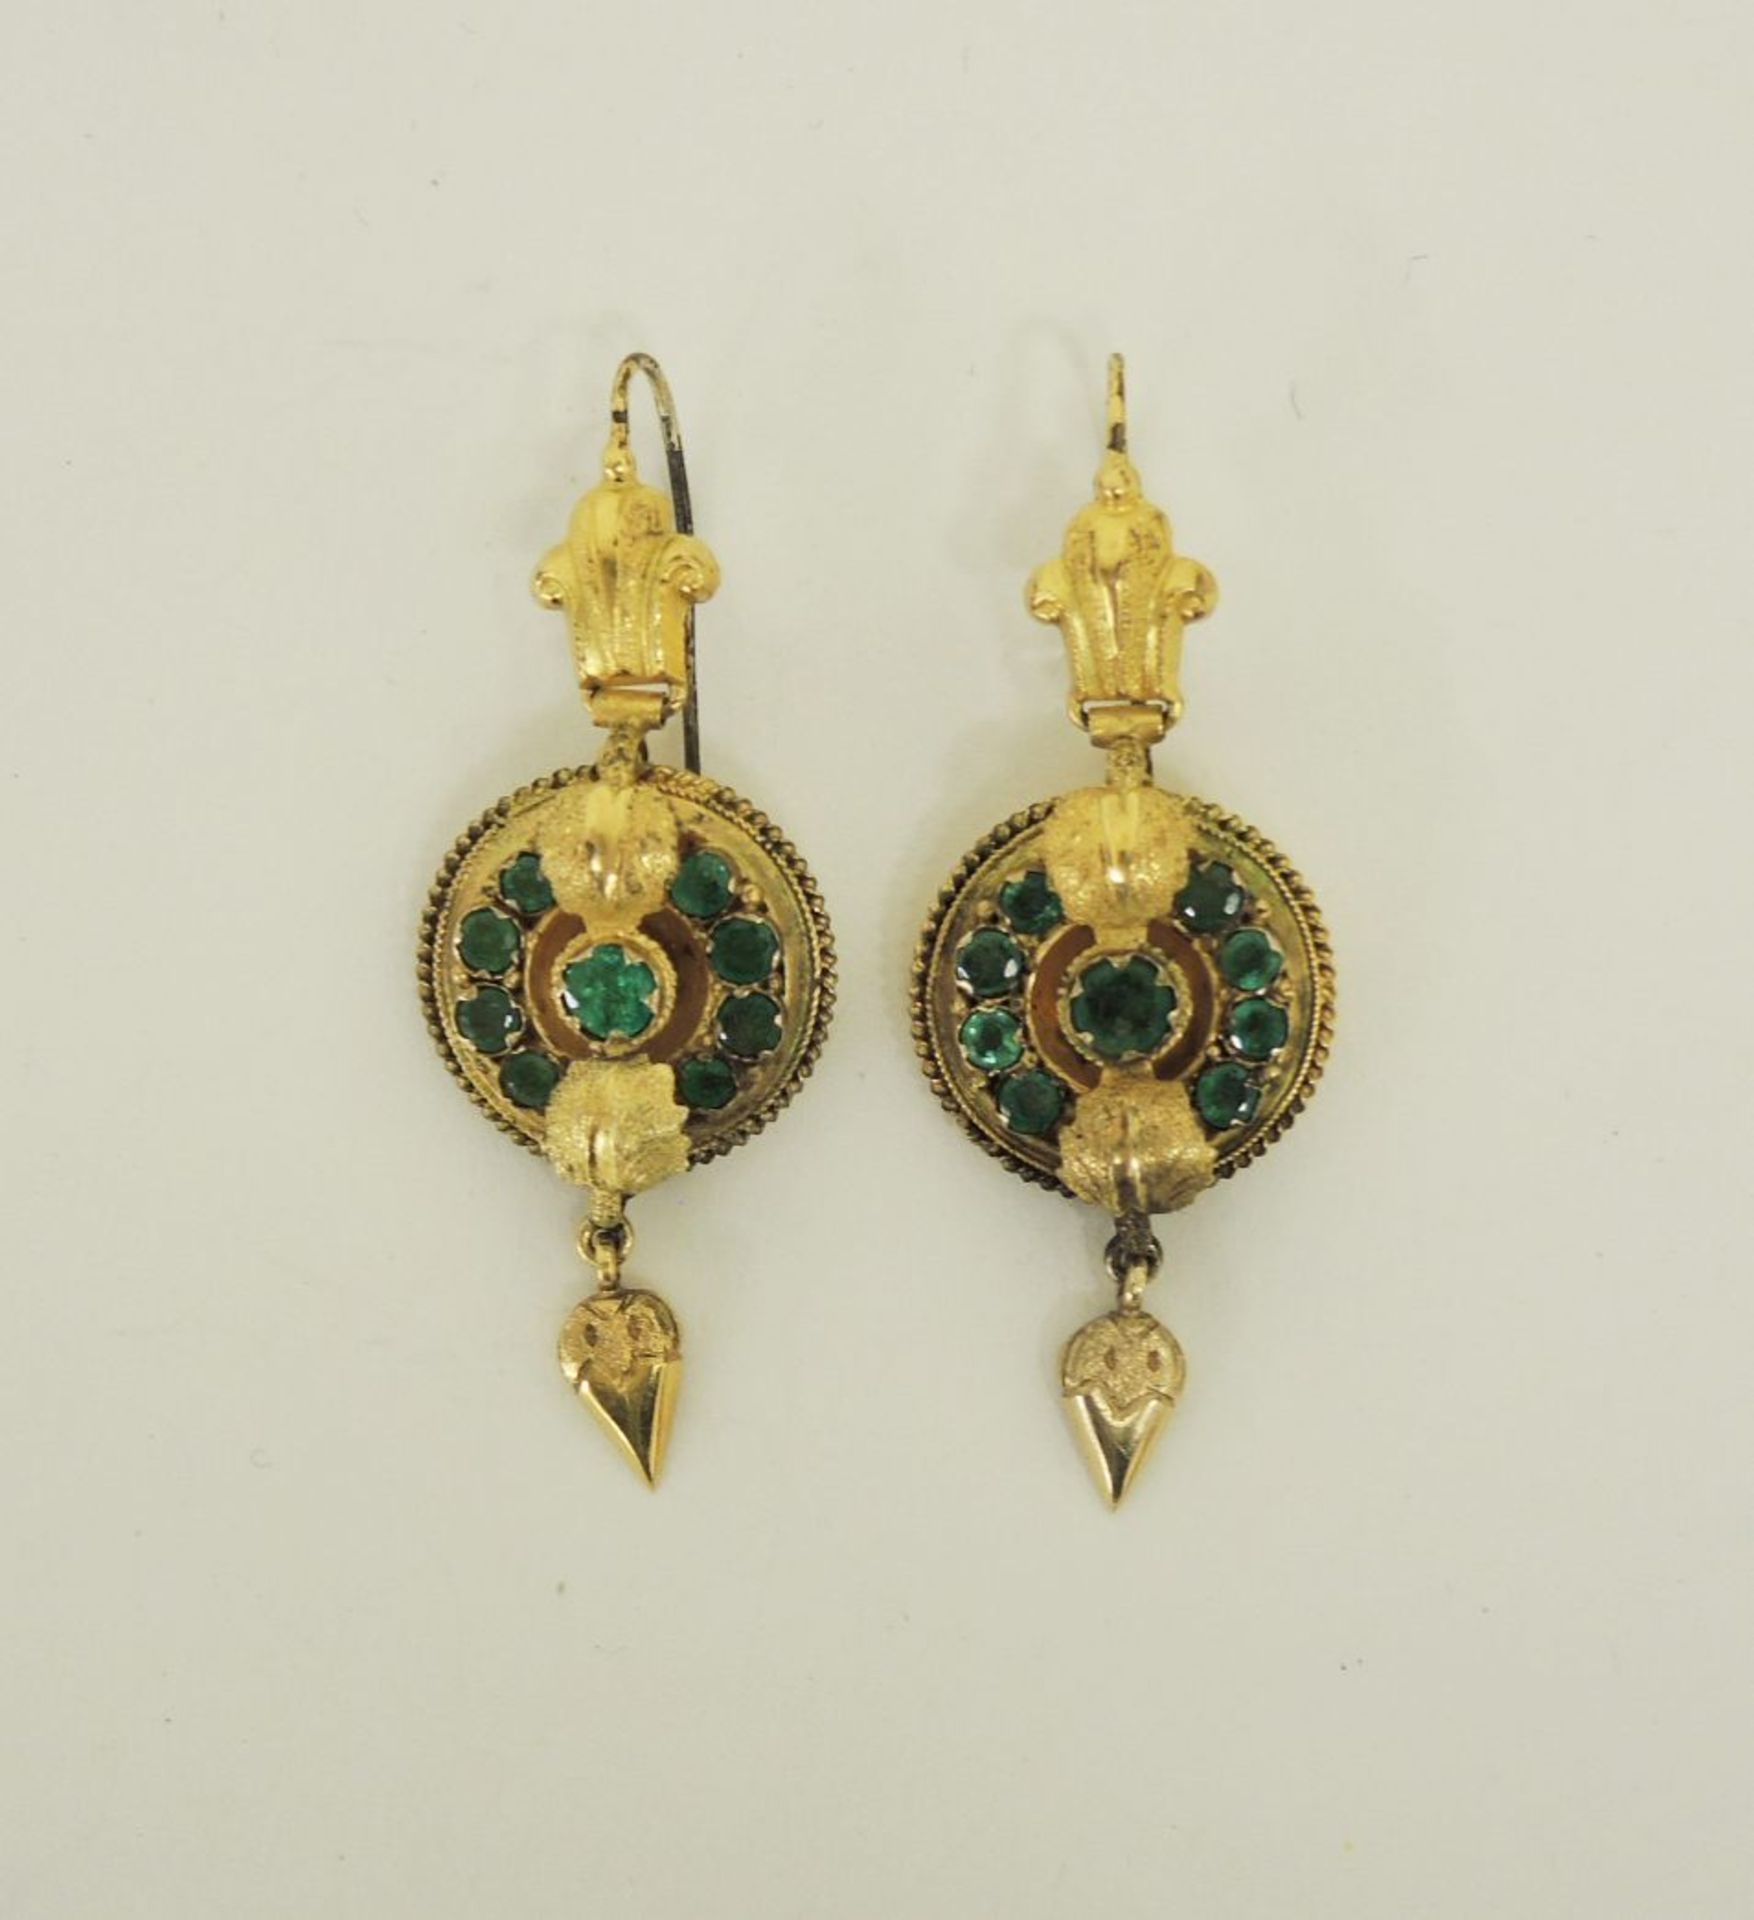 Paar OhrhängerKupfer, vergoldet. Runde Form, Front besetzt mit grünen Schmucksteinen und